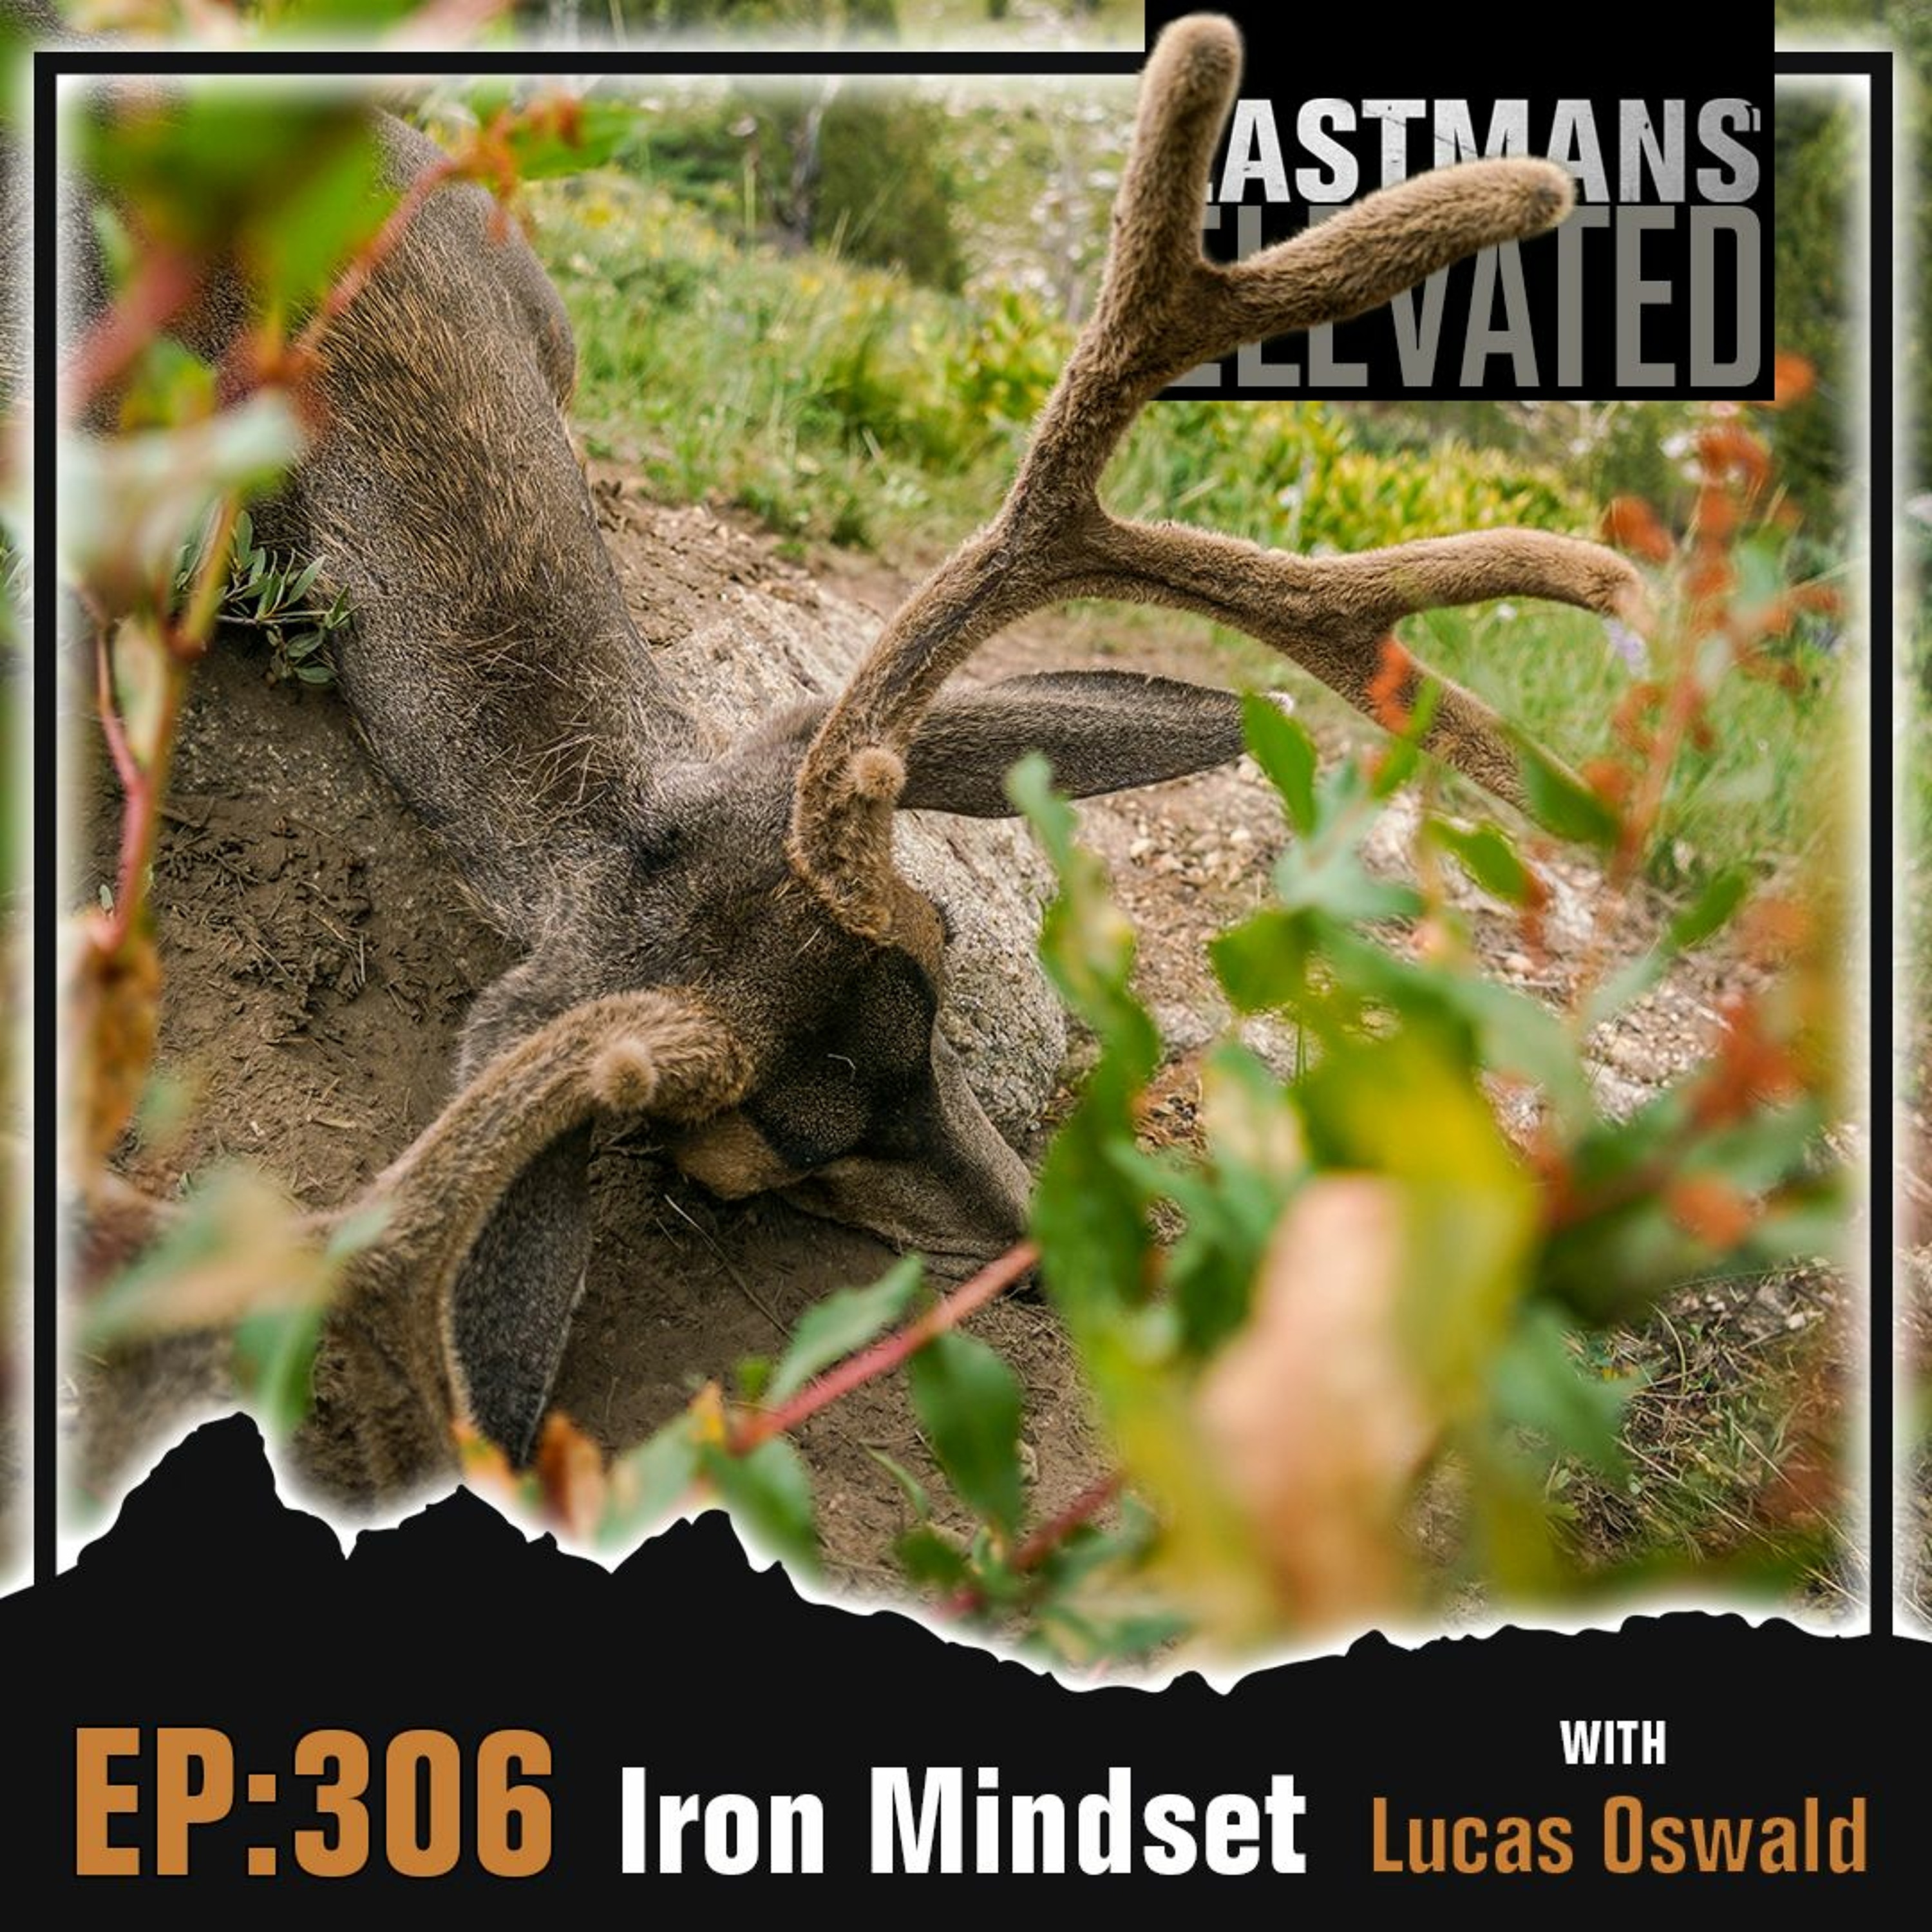 Episode 306: Iron Mindset with Lucas Oswald